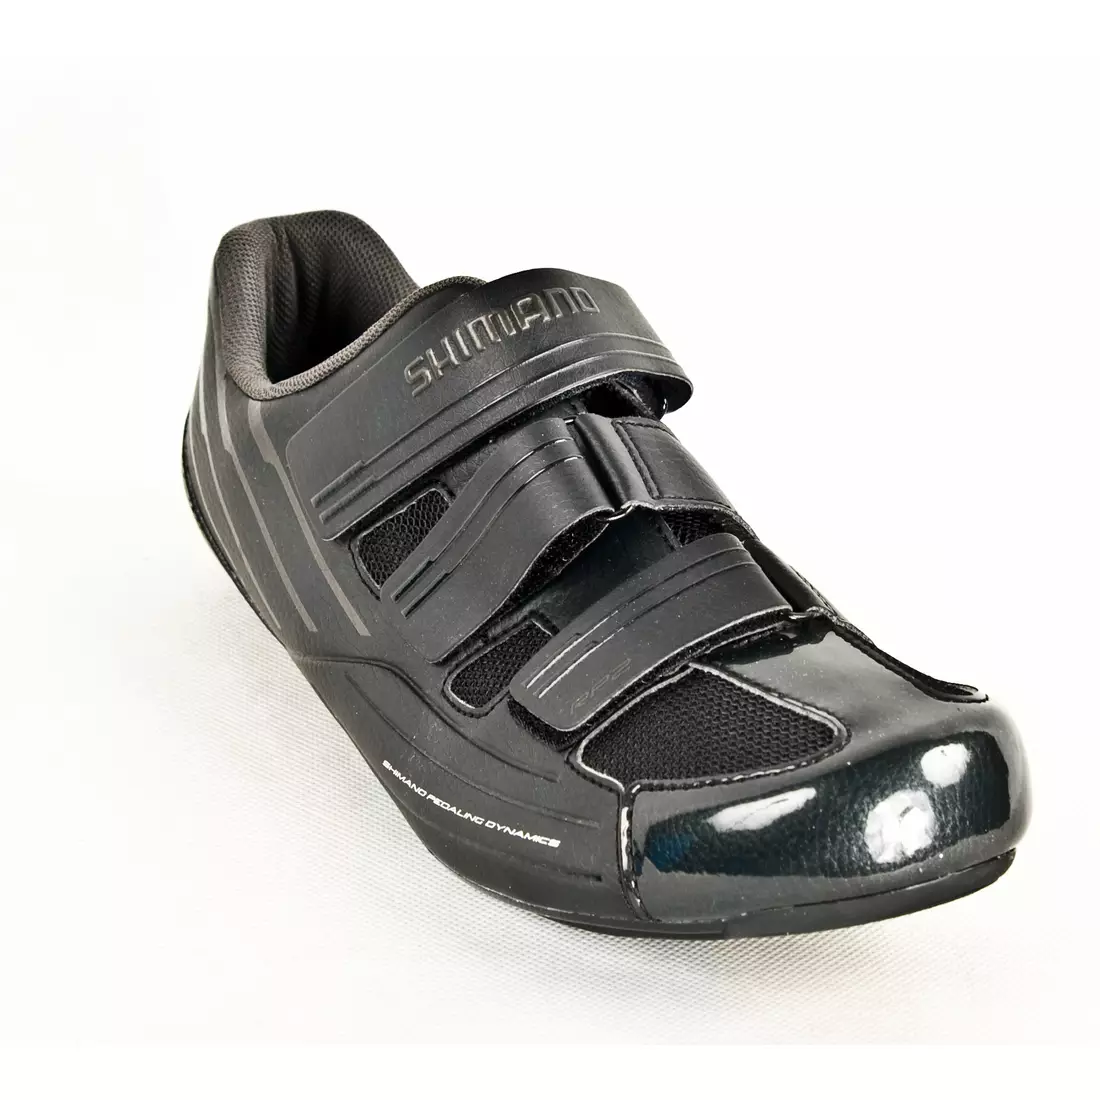 SHIMANO SH-RP200SL - pánské silniční cyklistické boty, barva: černá